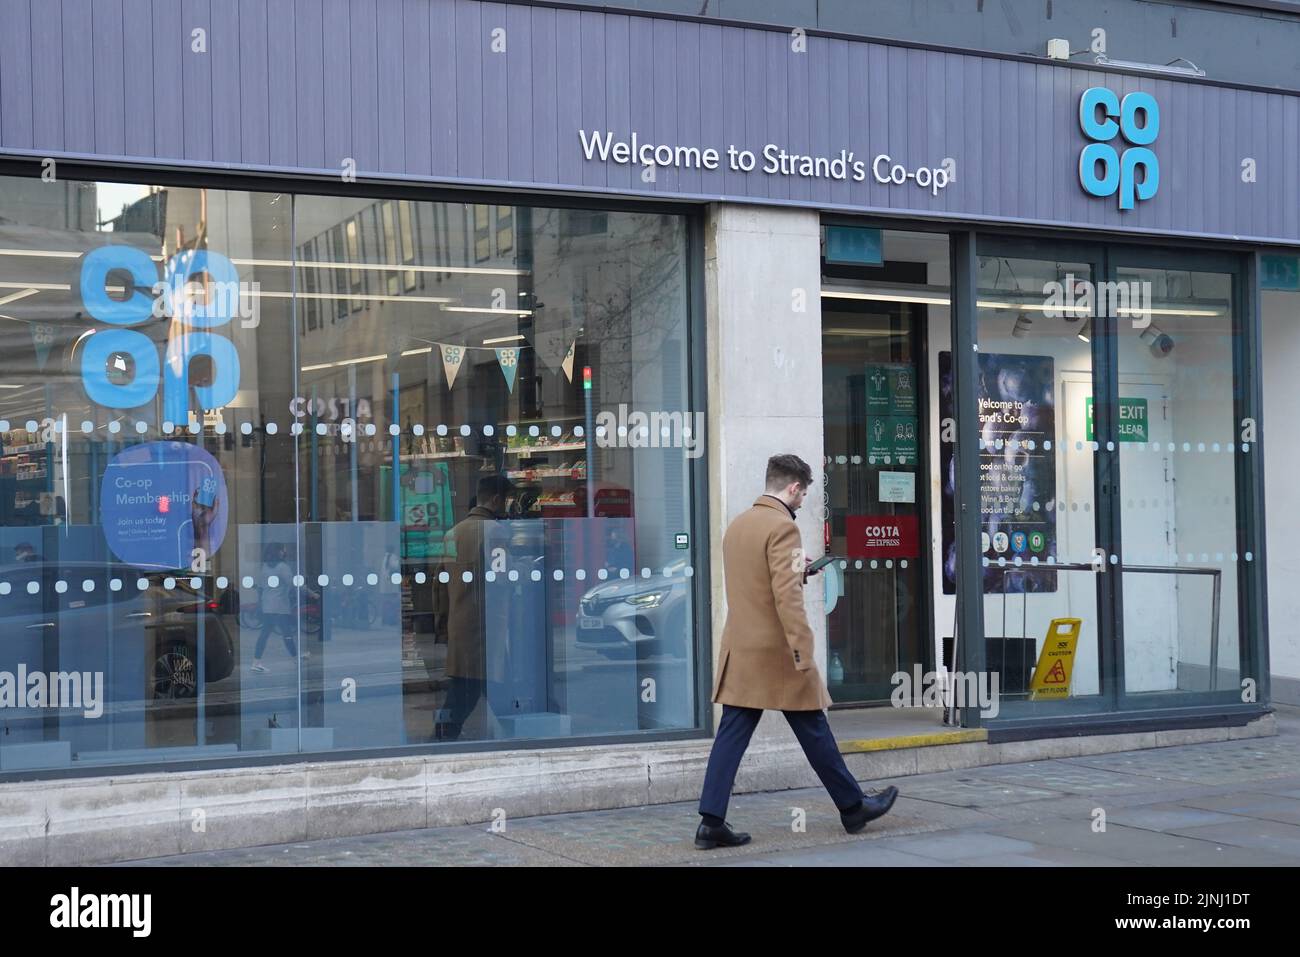 Foto de archivo fechada el 14/01/22 de una tienda de Co-Op en The Strand, en el centro de Londres, como la Co-op se ha comprometido a ayudar a las comunidades desfavorecidas o aisladas a evitar convertirse en 'desiertos de dinero'. Foto de stock